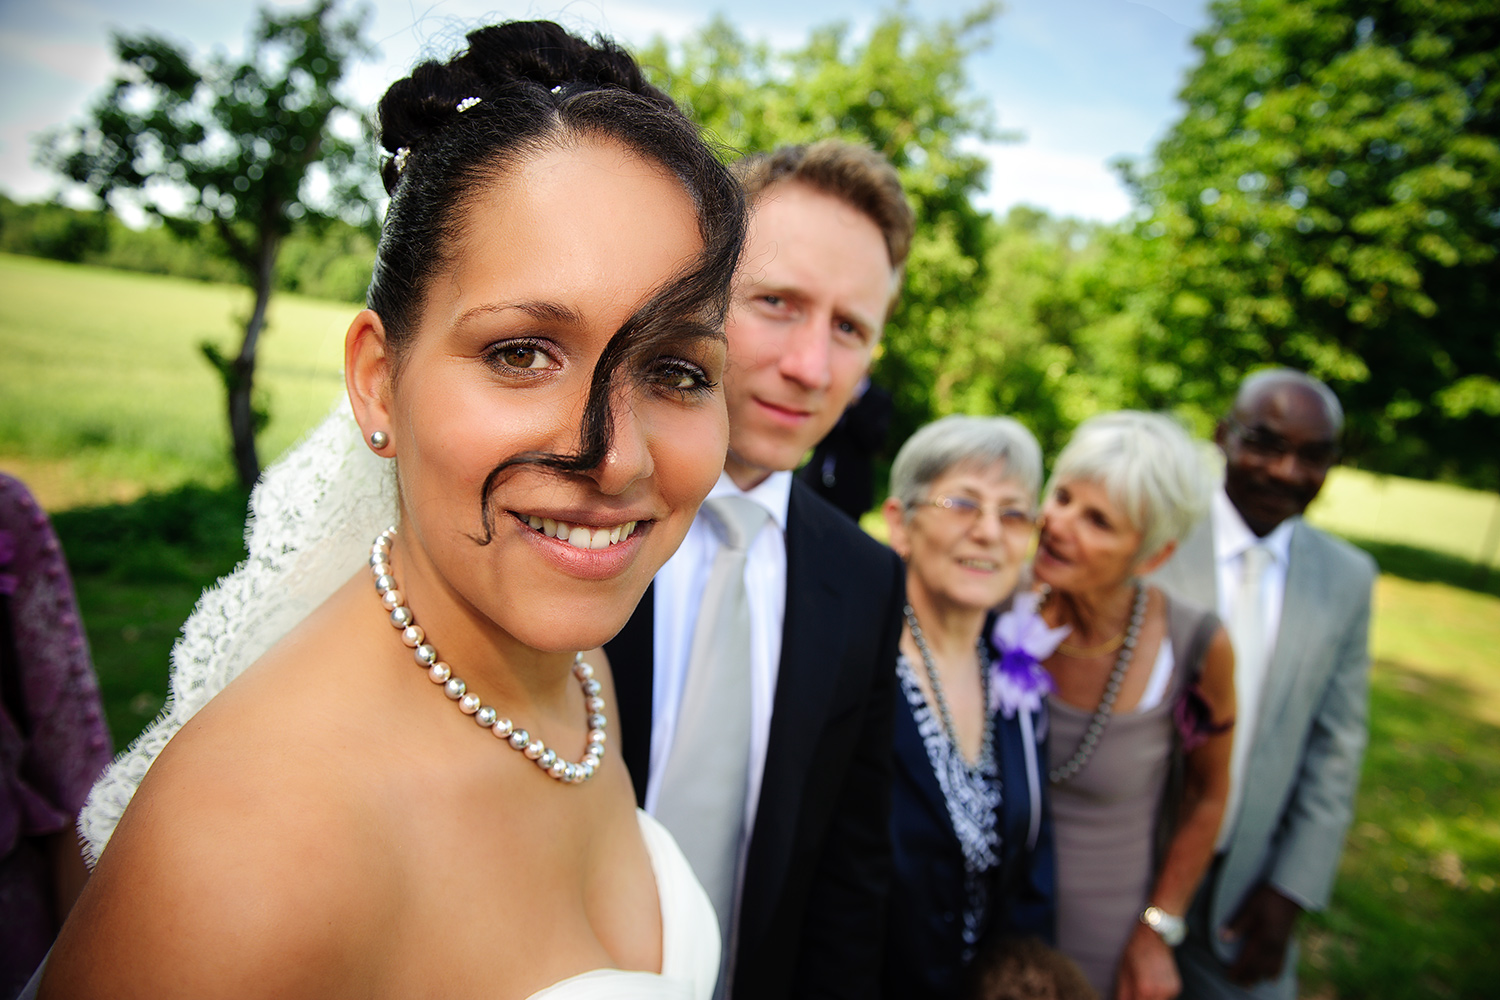 Fotograf für Hochzeiten, Brautpaar-Fotoshootings und Gruppenfotos in Rheine